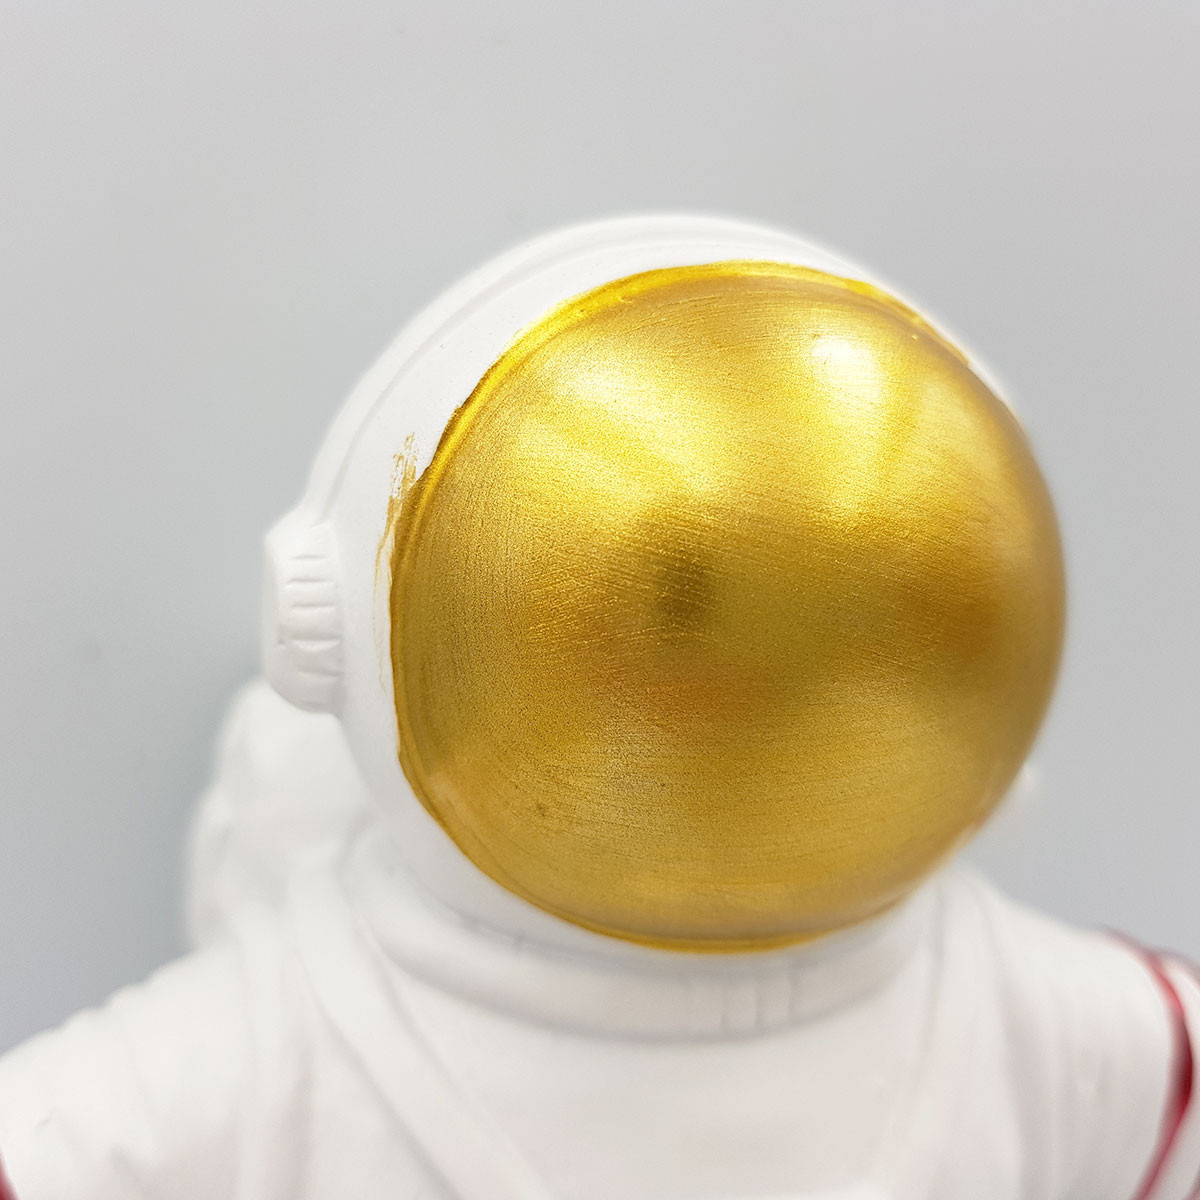 Astronauta Decorativo De Resina